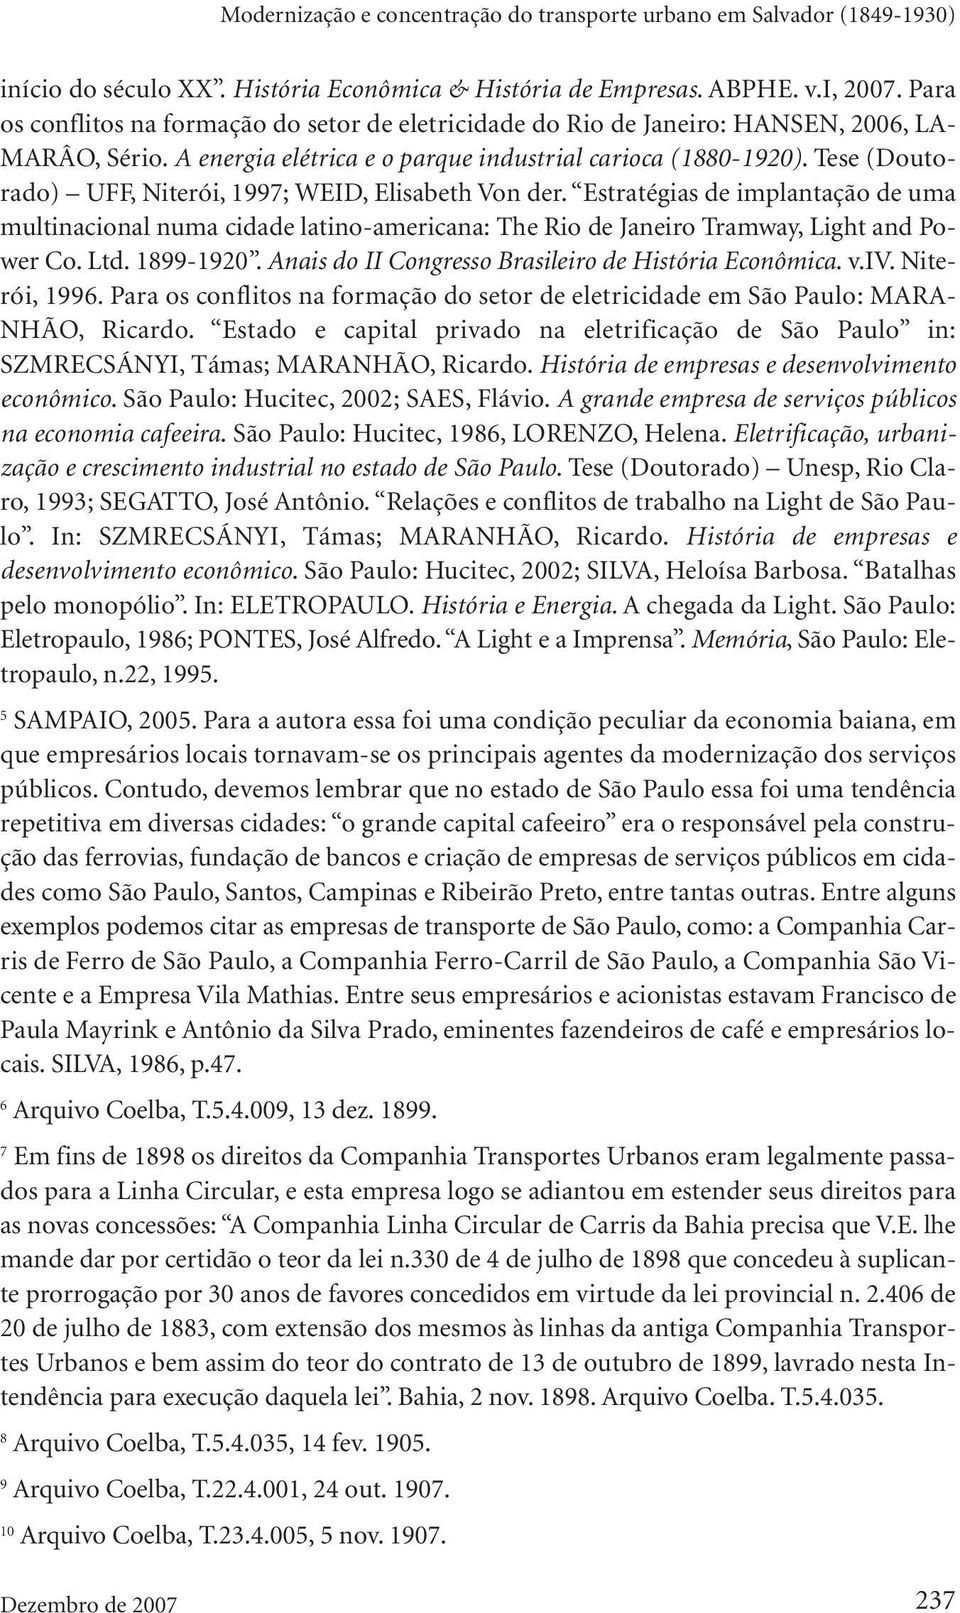 Tese (Doutorado) UFF, Niterói, 1997; WEID, Elisabeth Von der. Estratégias de implantação de uma multinacional numa cidade latino-americana: The Rio de Janeiro Tramway, Light and Power Co. Ltd.